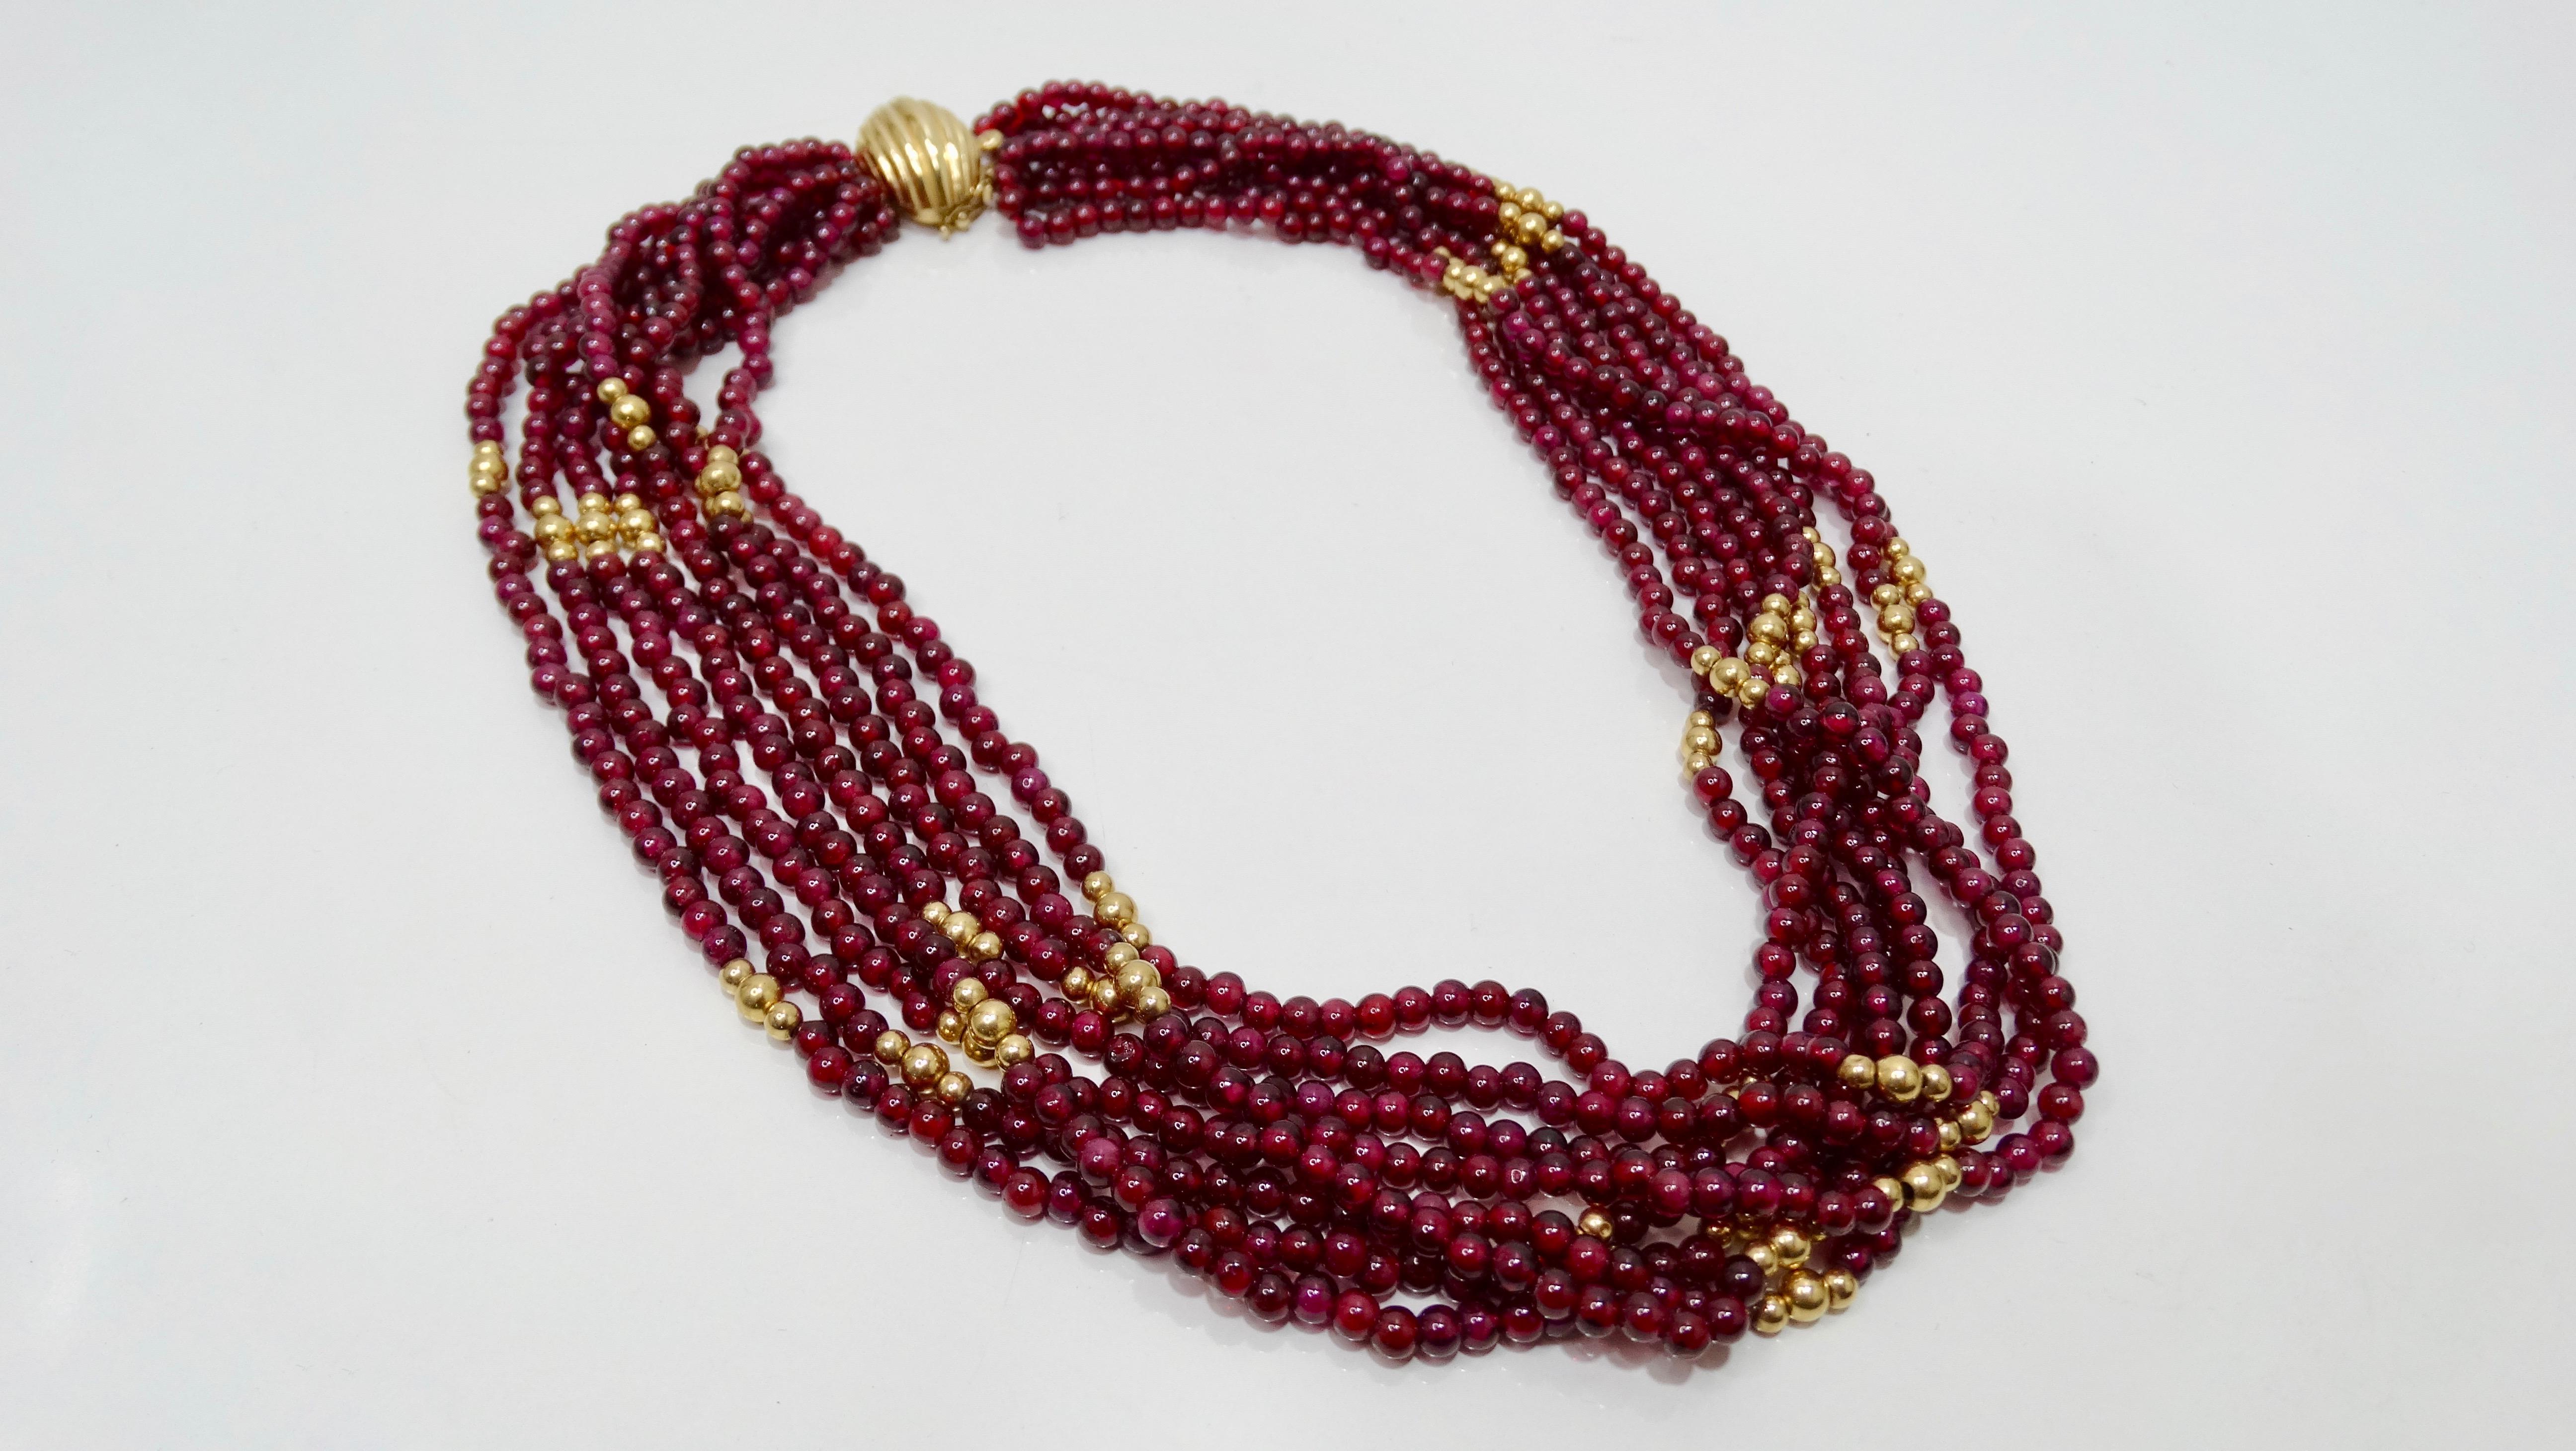 Ergänzen Sie Ihre Sammlung mit dieser atemberaubenden Halskette aus Granat und Gold! Dieses mehrreihige Collier aus der Mitte des 20. Jahrhunderts besteht aus 8 Perlenreihen mit etwa 300 rubinroten Granaten und 14-karätigem Gold. Sie hat einen